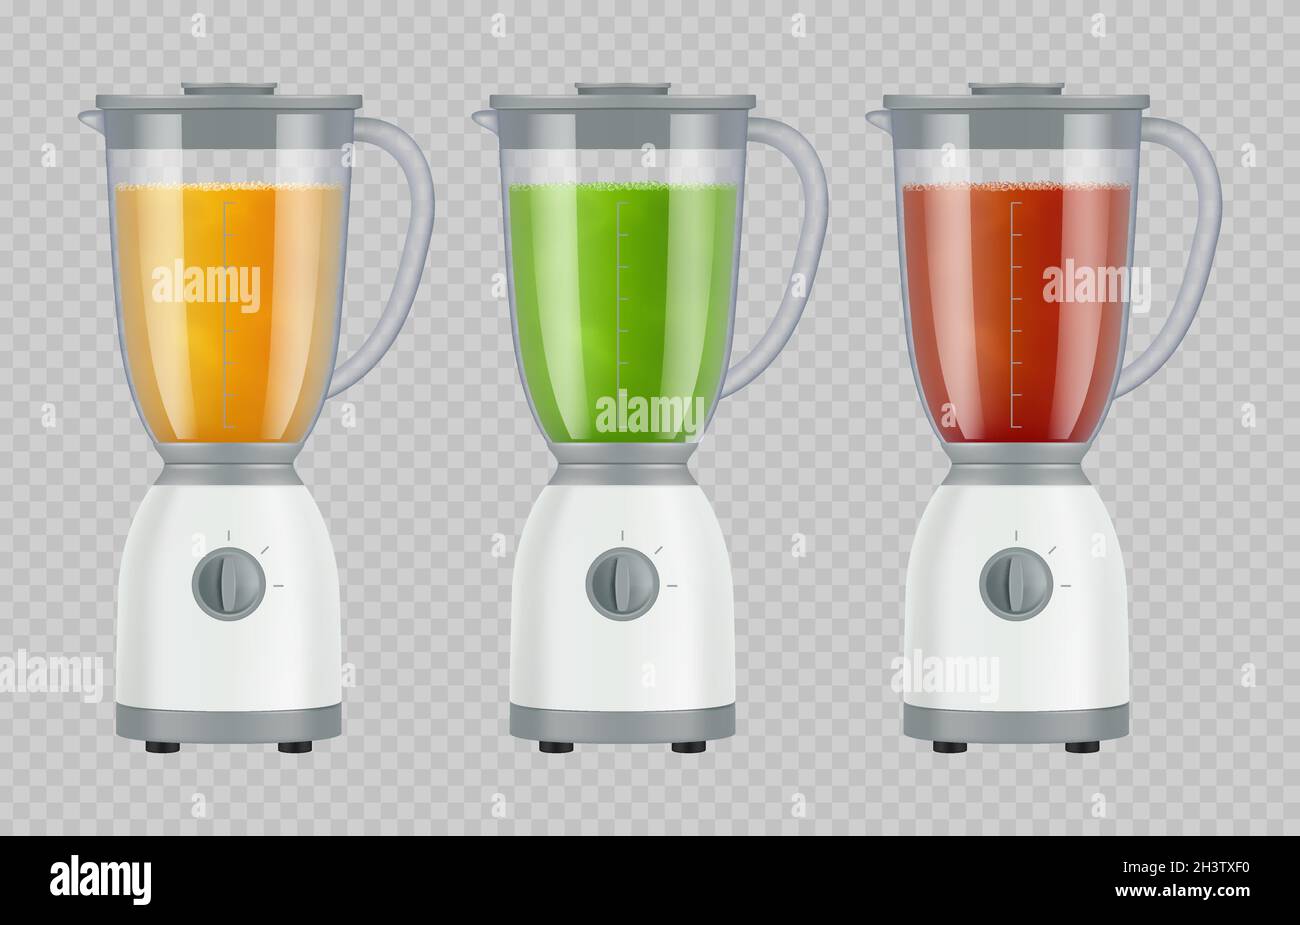 Entsafter mit Saft. Smoothie-Mixer Küchengeräte Flüssig Getränke Lebensmittel Zubereitung Mixer anständige Vektor-Set Stock Vektor